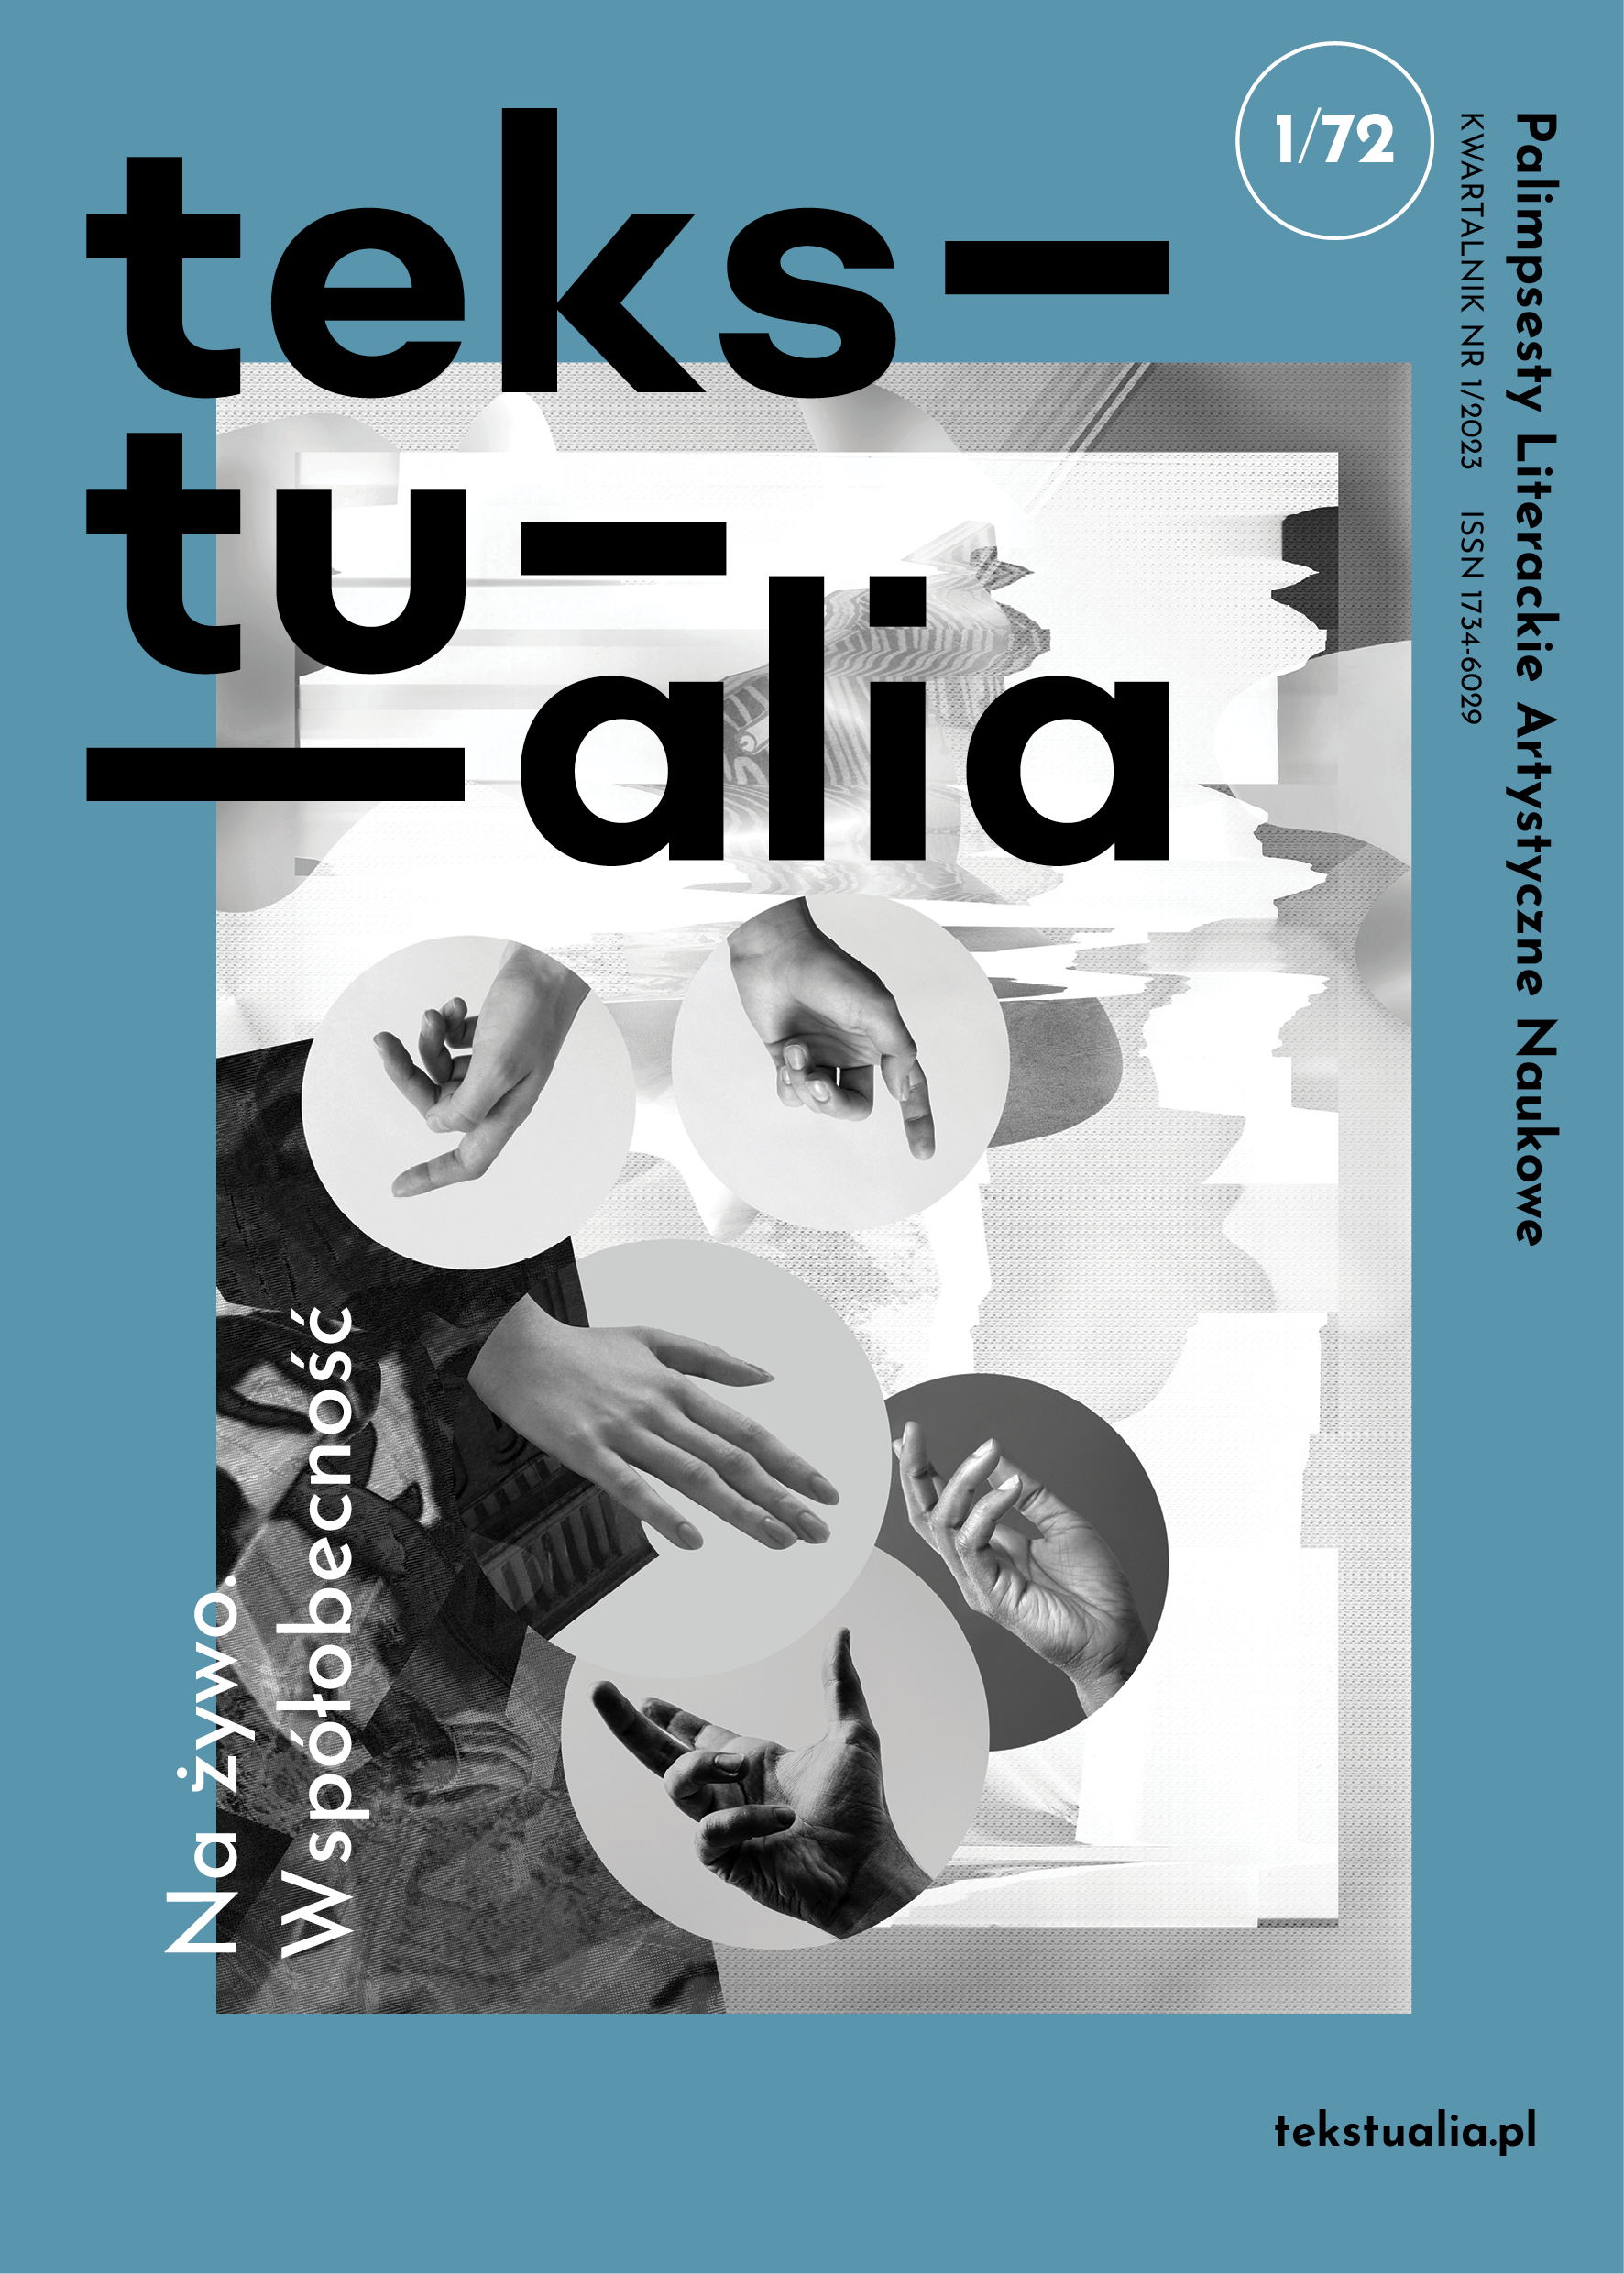 Publicação Tekstualia, da Polônia: artigo de Rodolfo García Vázquez sobre o projeto da SP Escola de Teatro.